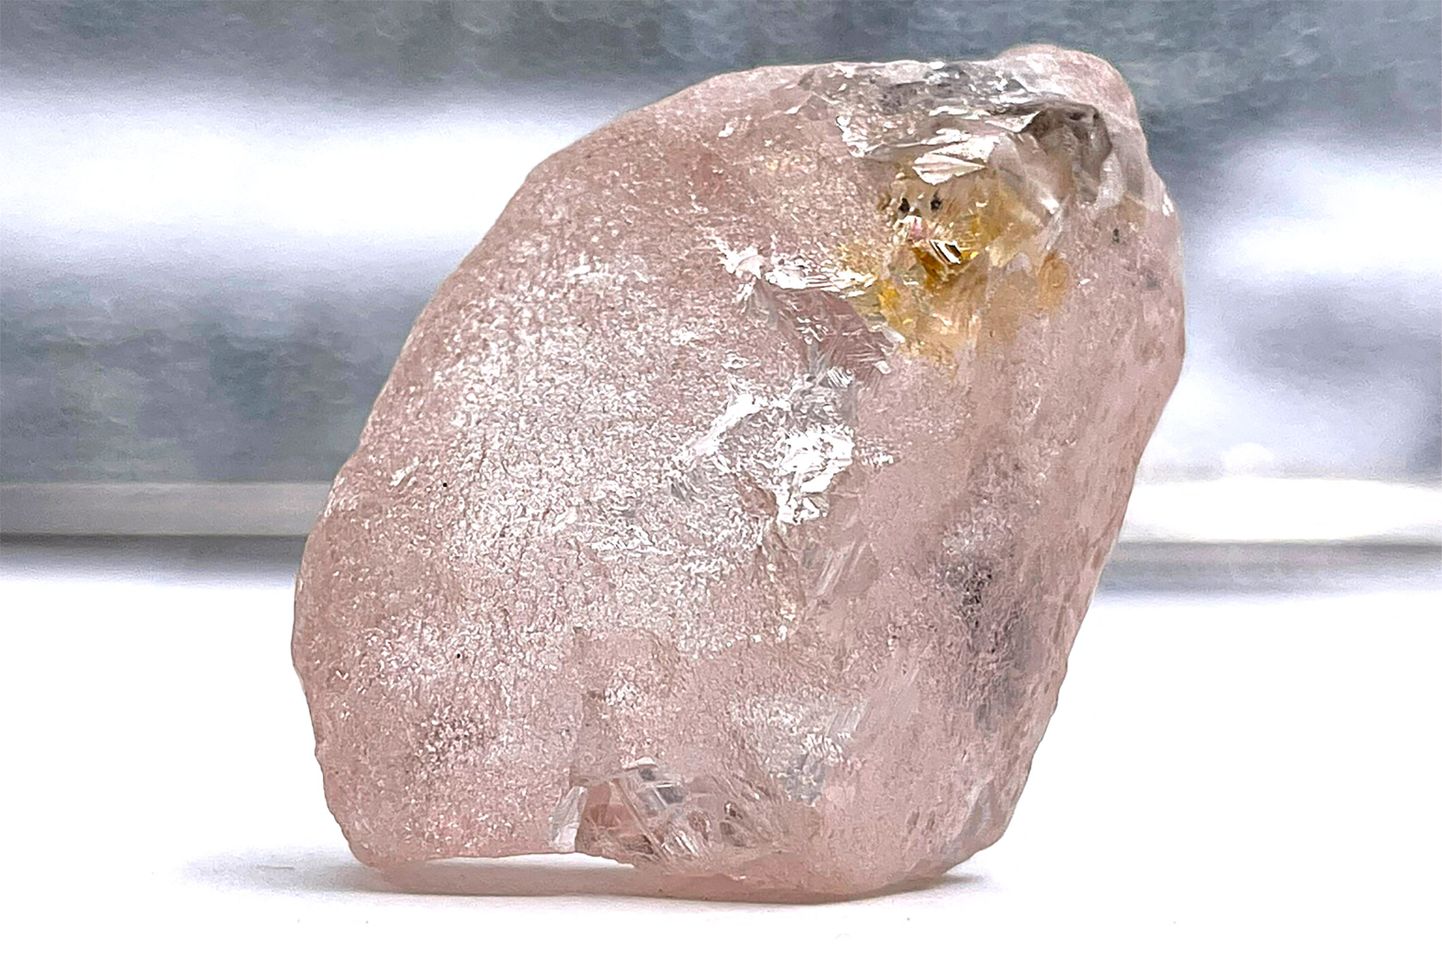 Angolast leitud Lulo Rose'iks (Lulo Roos) nimetatud 170-karaadine roosa teemant.